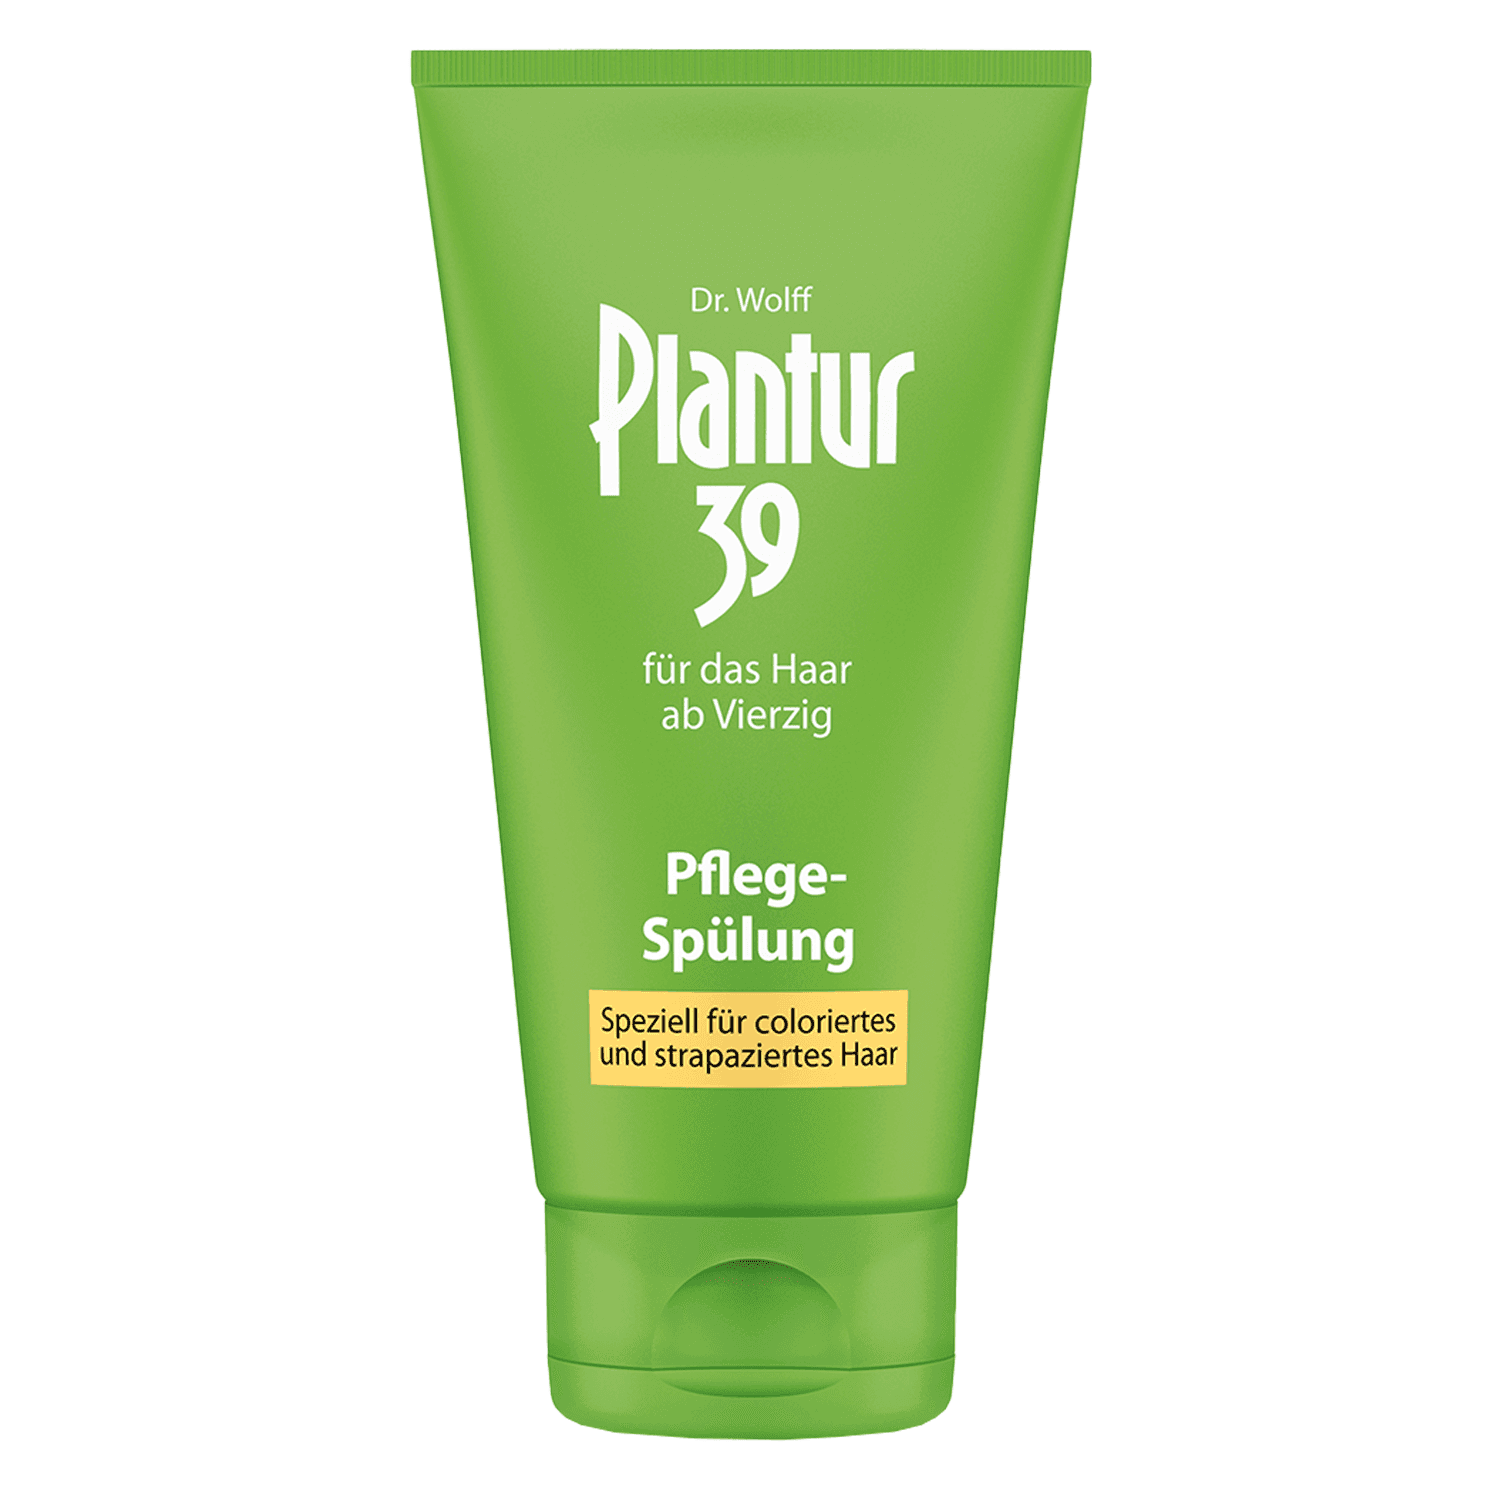 Plantur 39 - Pflege-Spülung für coloriertes und strapaziertes Haar